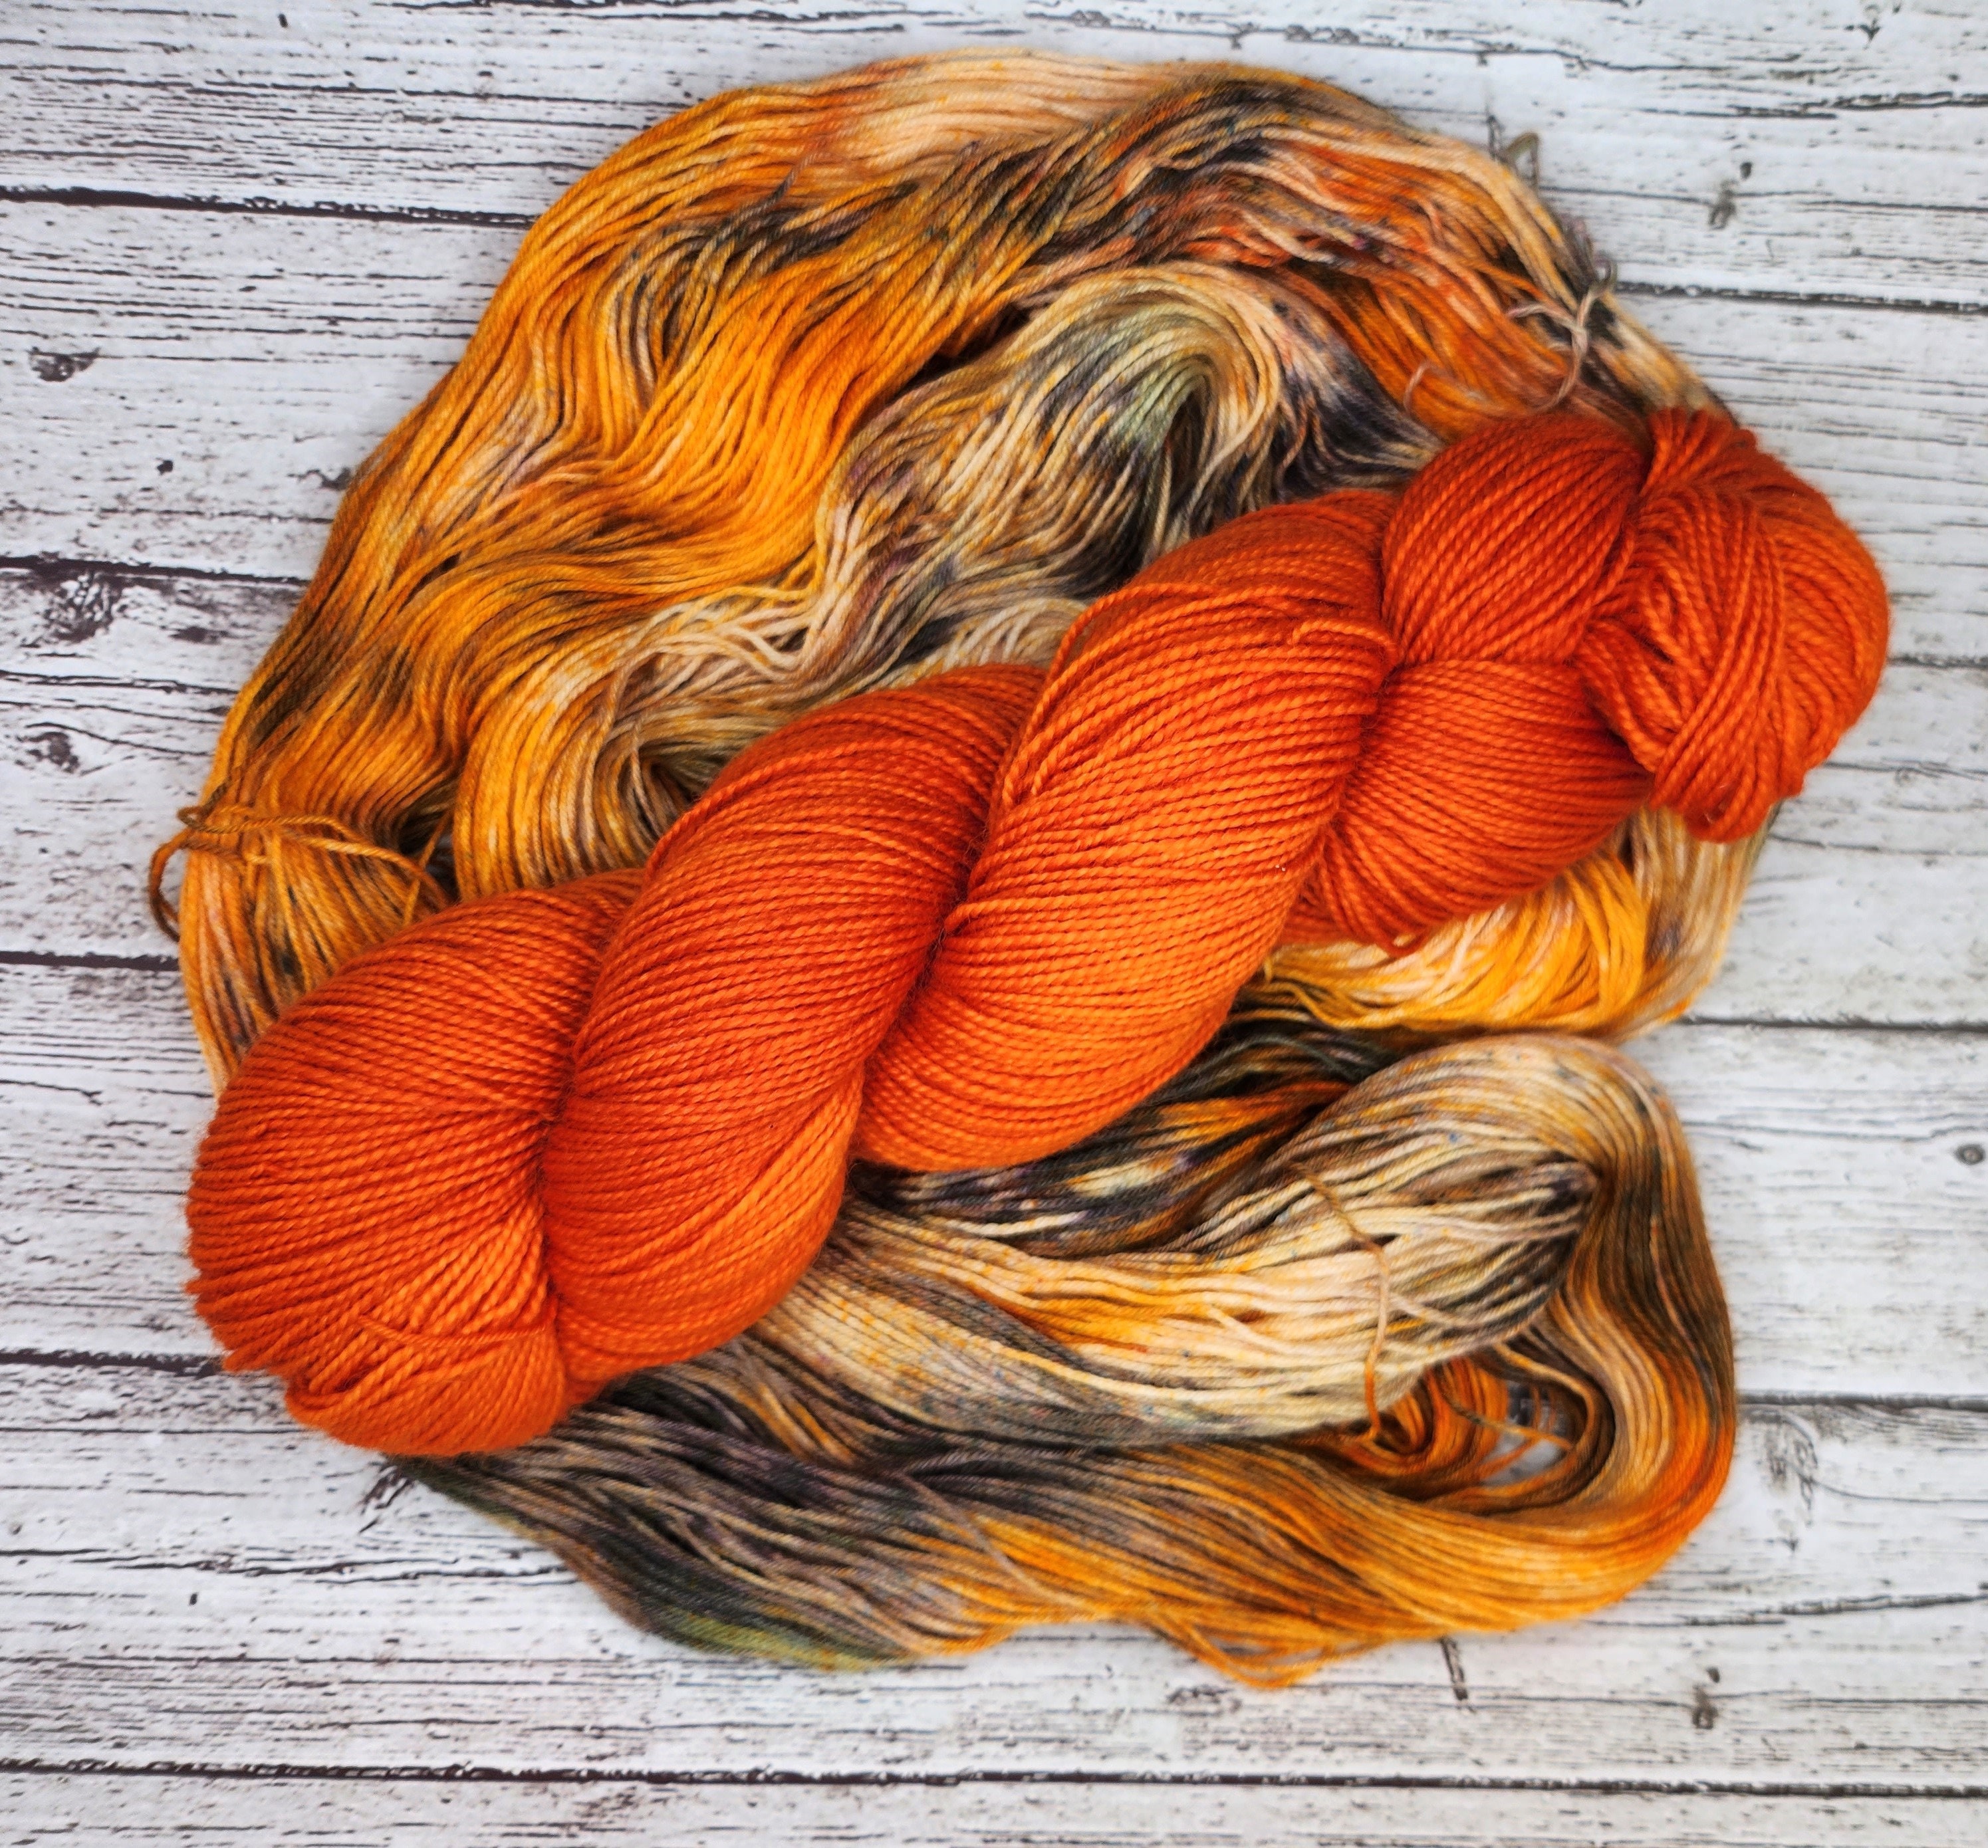 Mainstays Medium Acrylic Orange Yarn, 397 yd